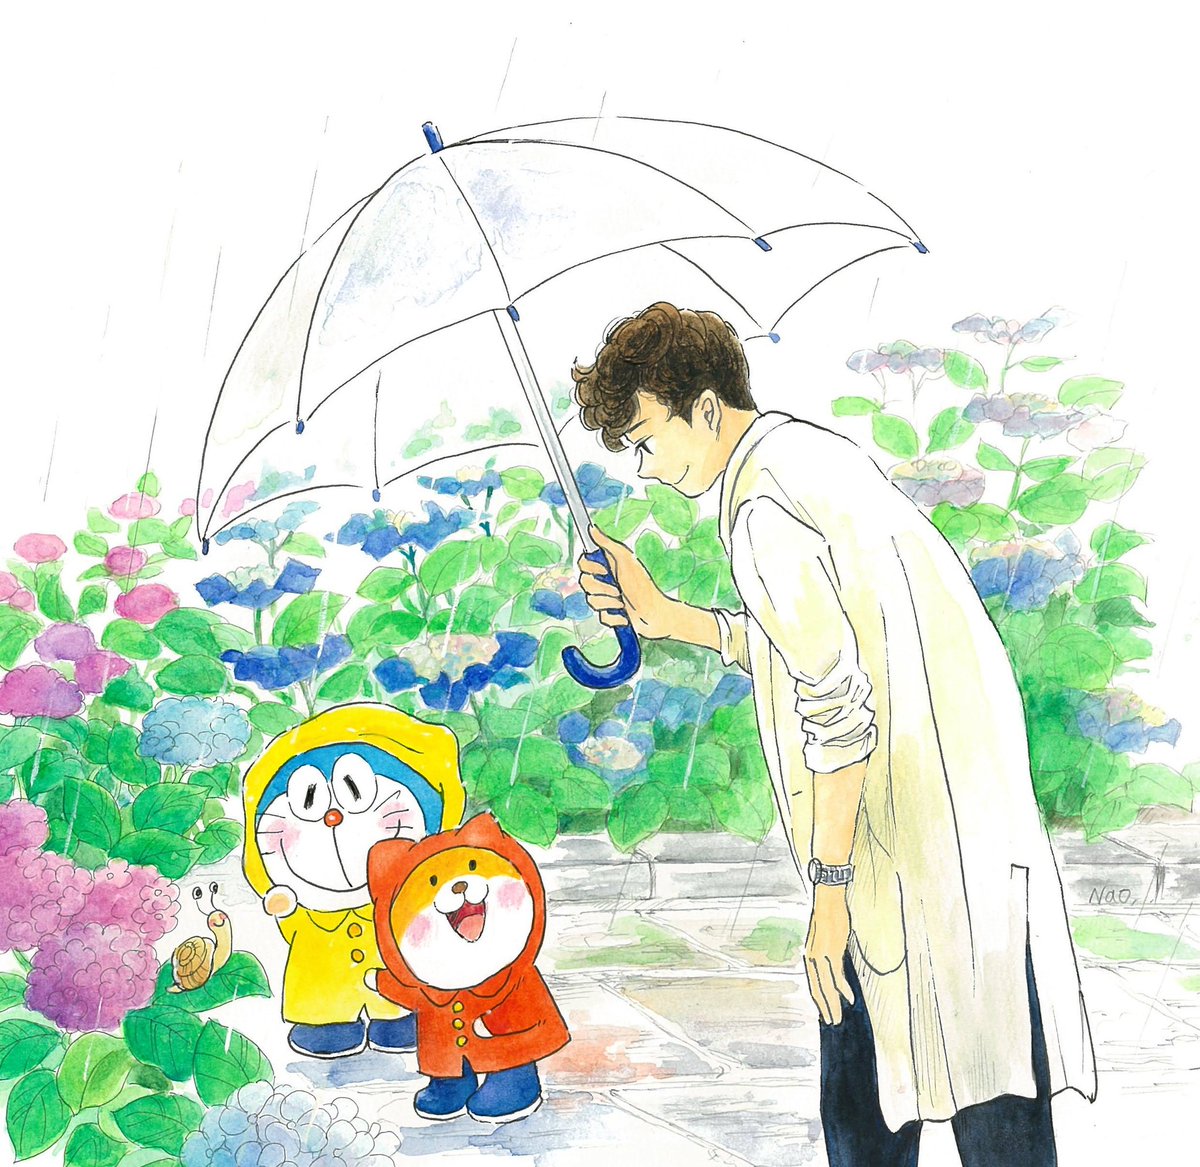 「雨の日。紫陽花。
小さなお友達との出会い。

‥雨の少ない梅雨でしたね…
そして」|Naoのイラスト